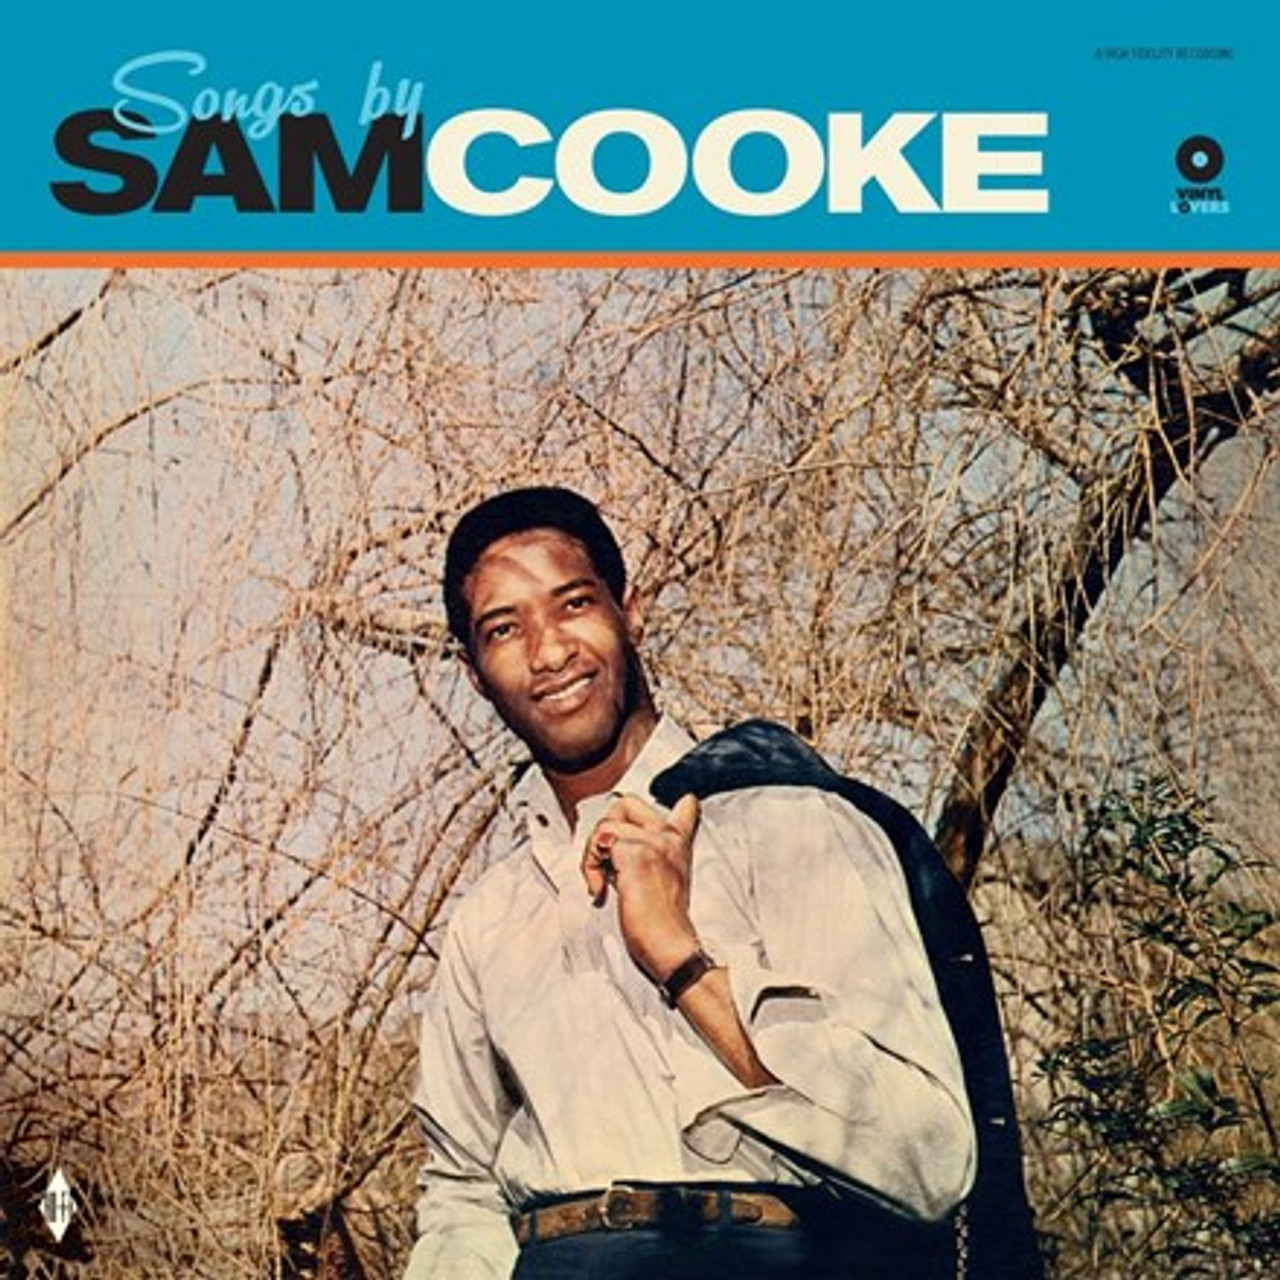 Sam Cooke - Songs by Sam Cooke (180g Import Vinyl LP)